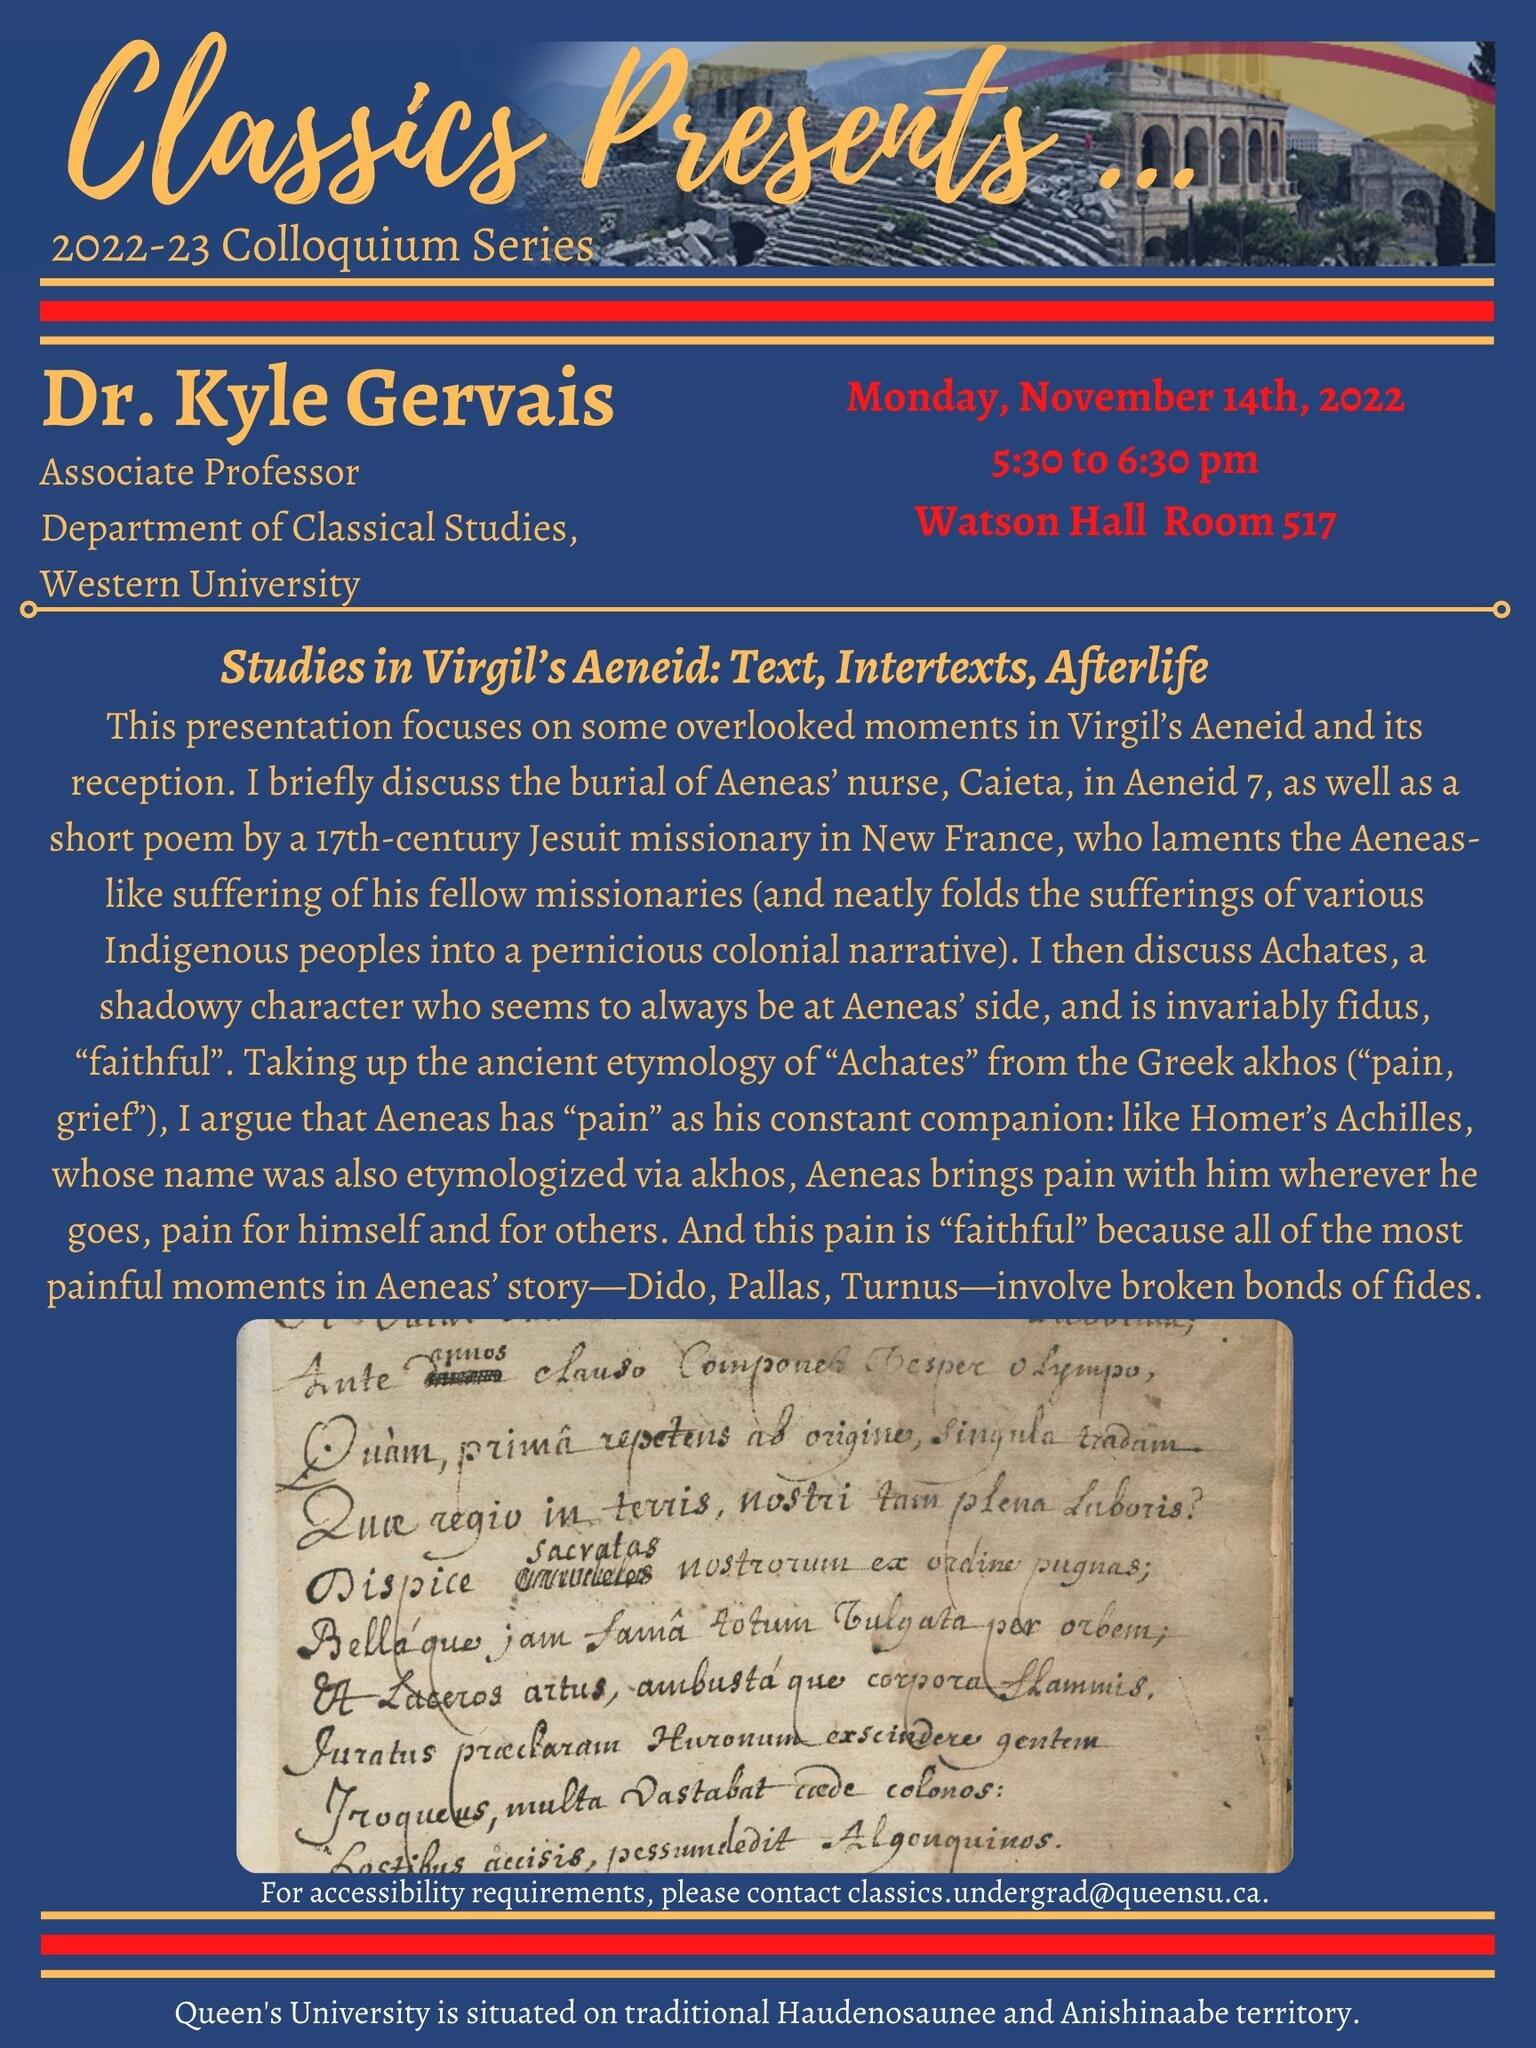 Classics Presents Dr. Kyle Gervais